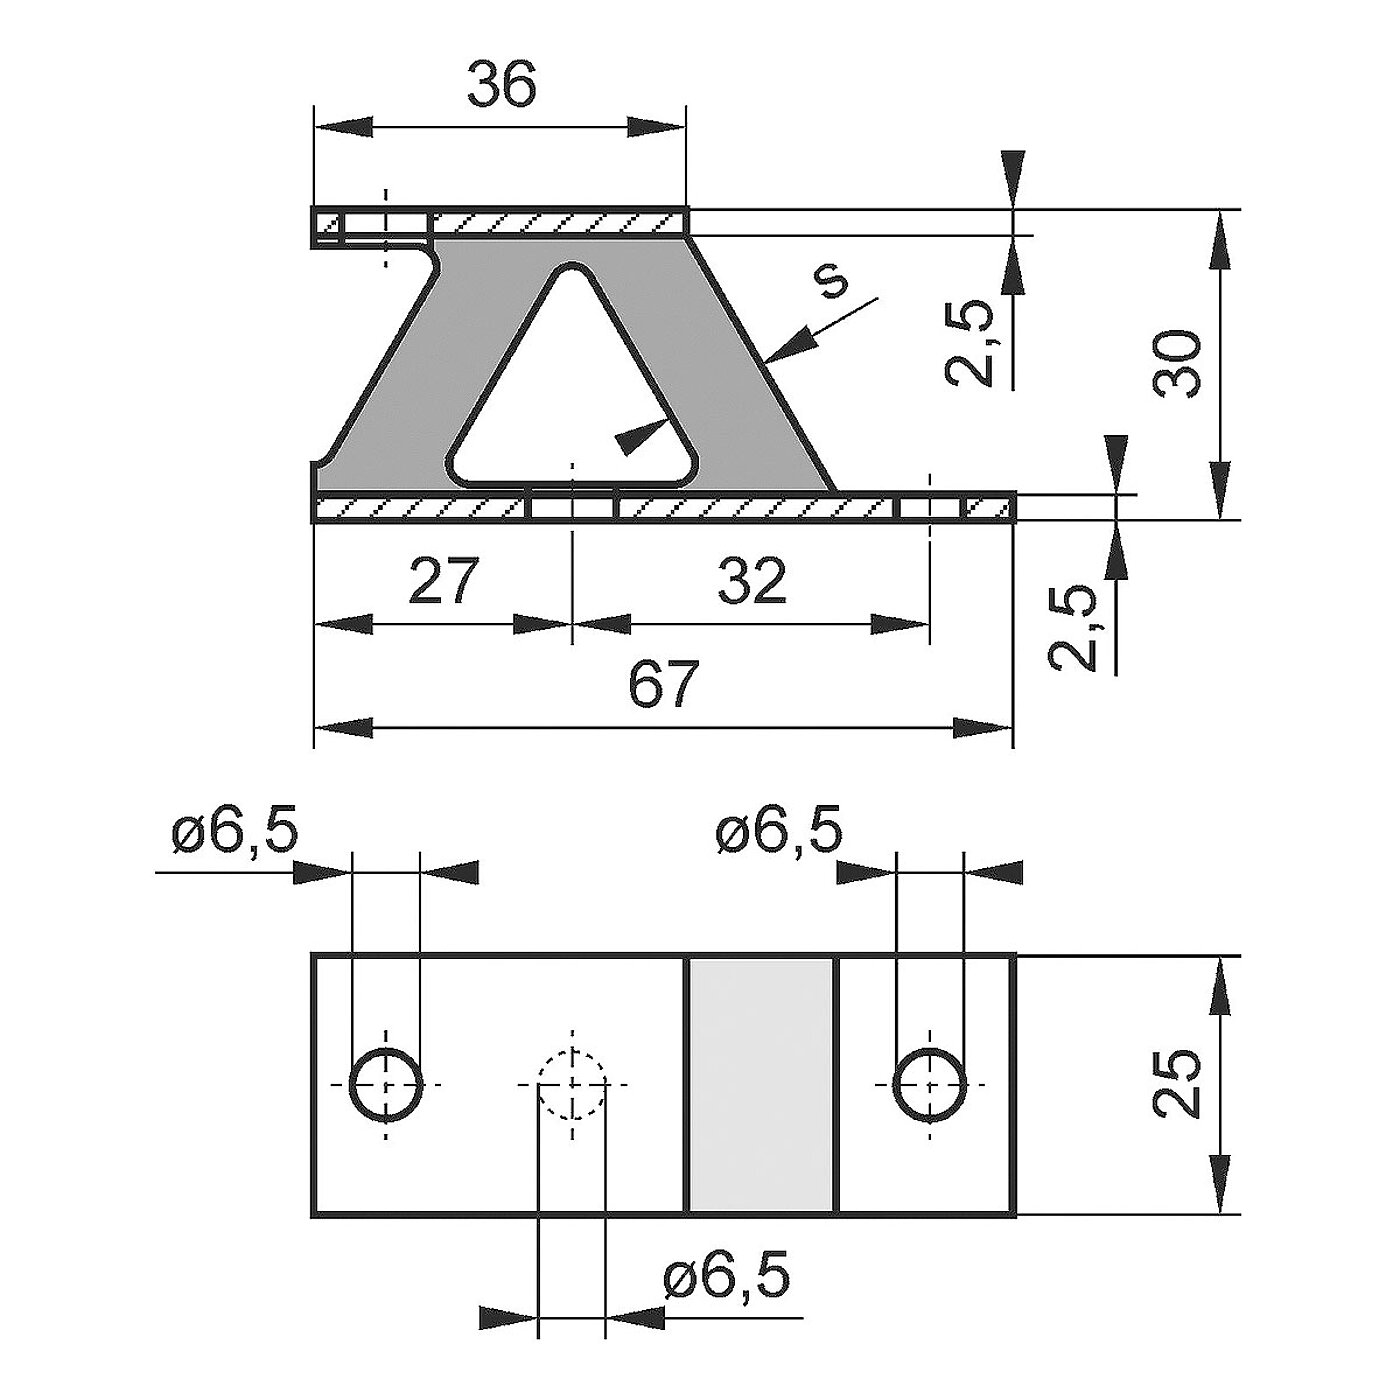 schematische Zeichnung eines Gummi-Metall-Geräteelementes mit Bodenplatte, Trägerplatte und dazwischenliegendem Elastomerkorpus